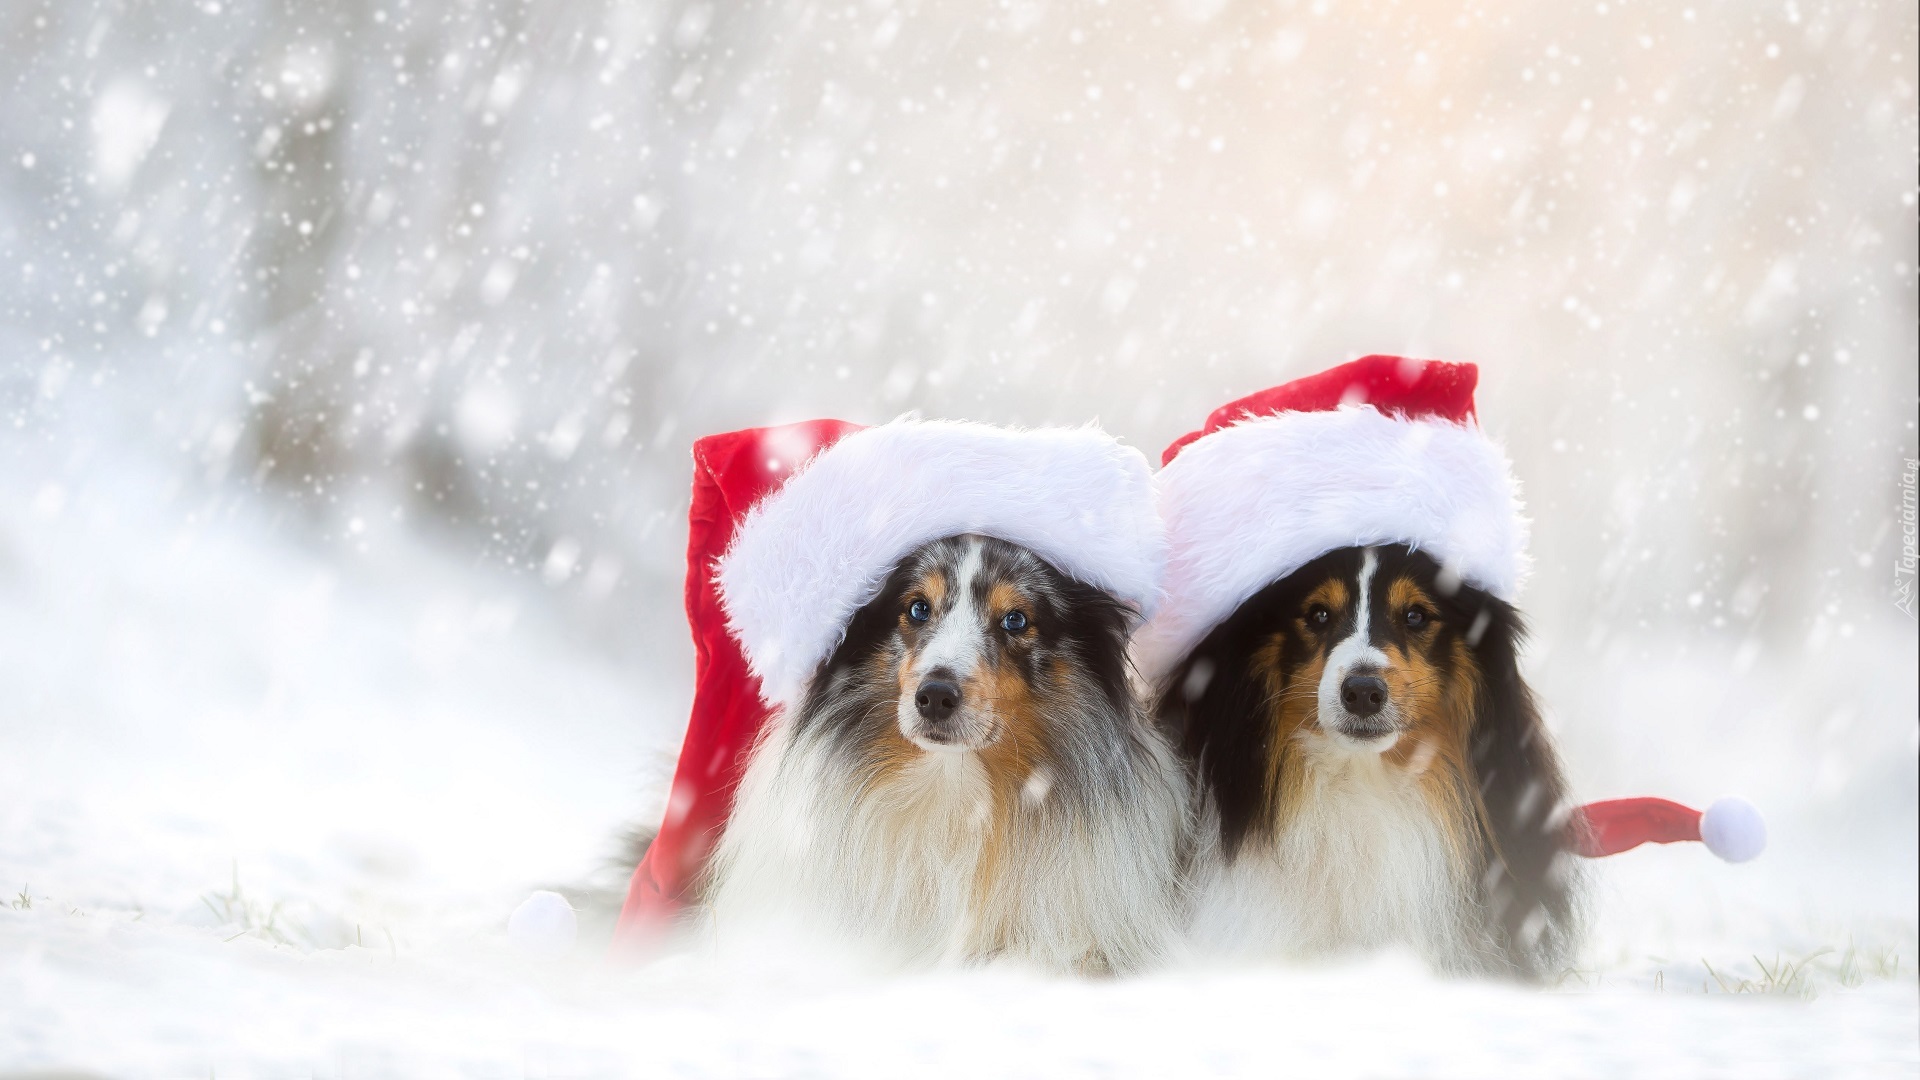 Скачать обои бесплатно Животные, Зима, Снег, Собака, Рождество, Снегопад, Шляпа Санты, Шетландская Овчарка картинка на рабочий стол ПК